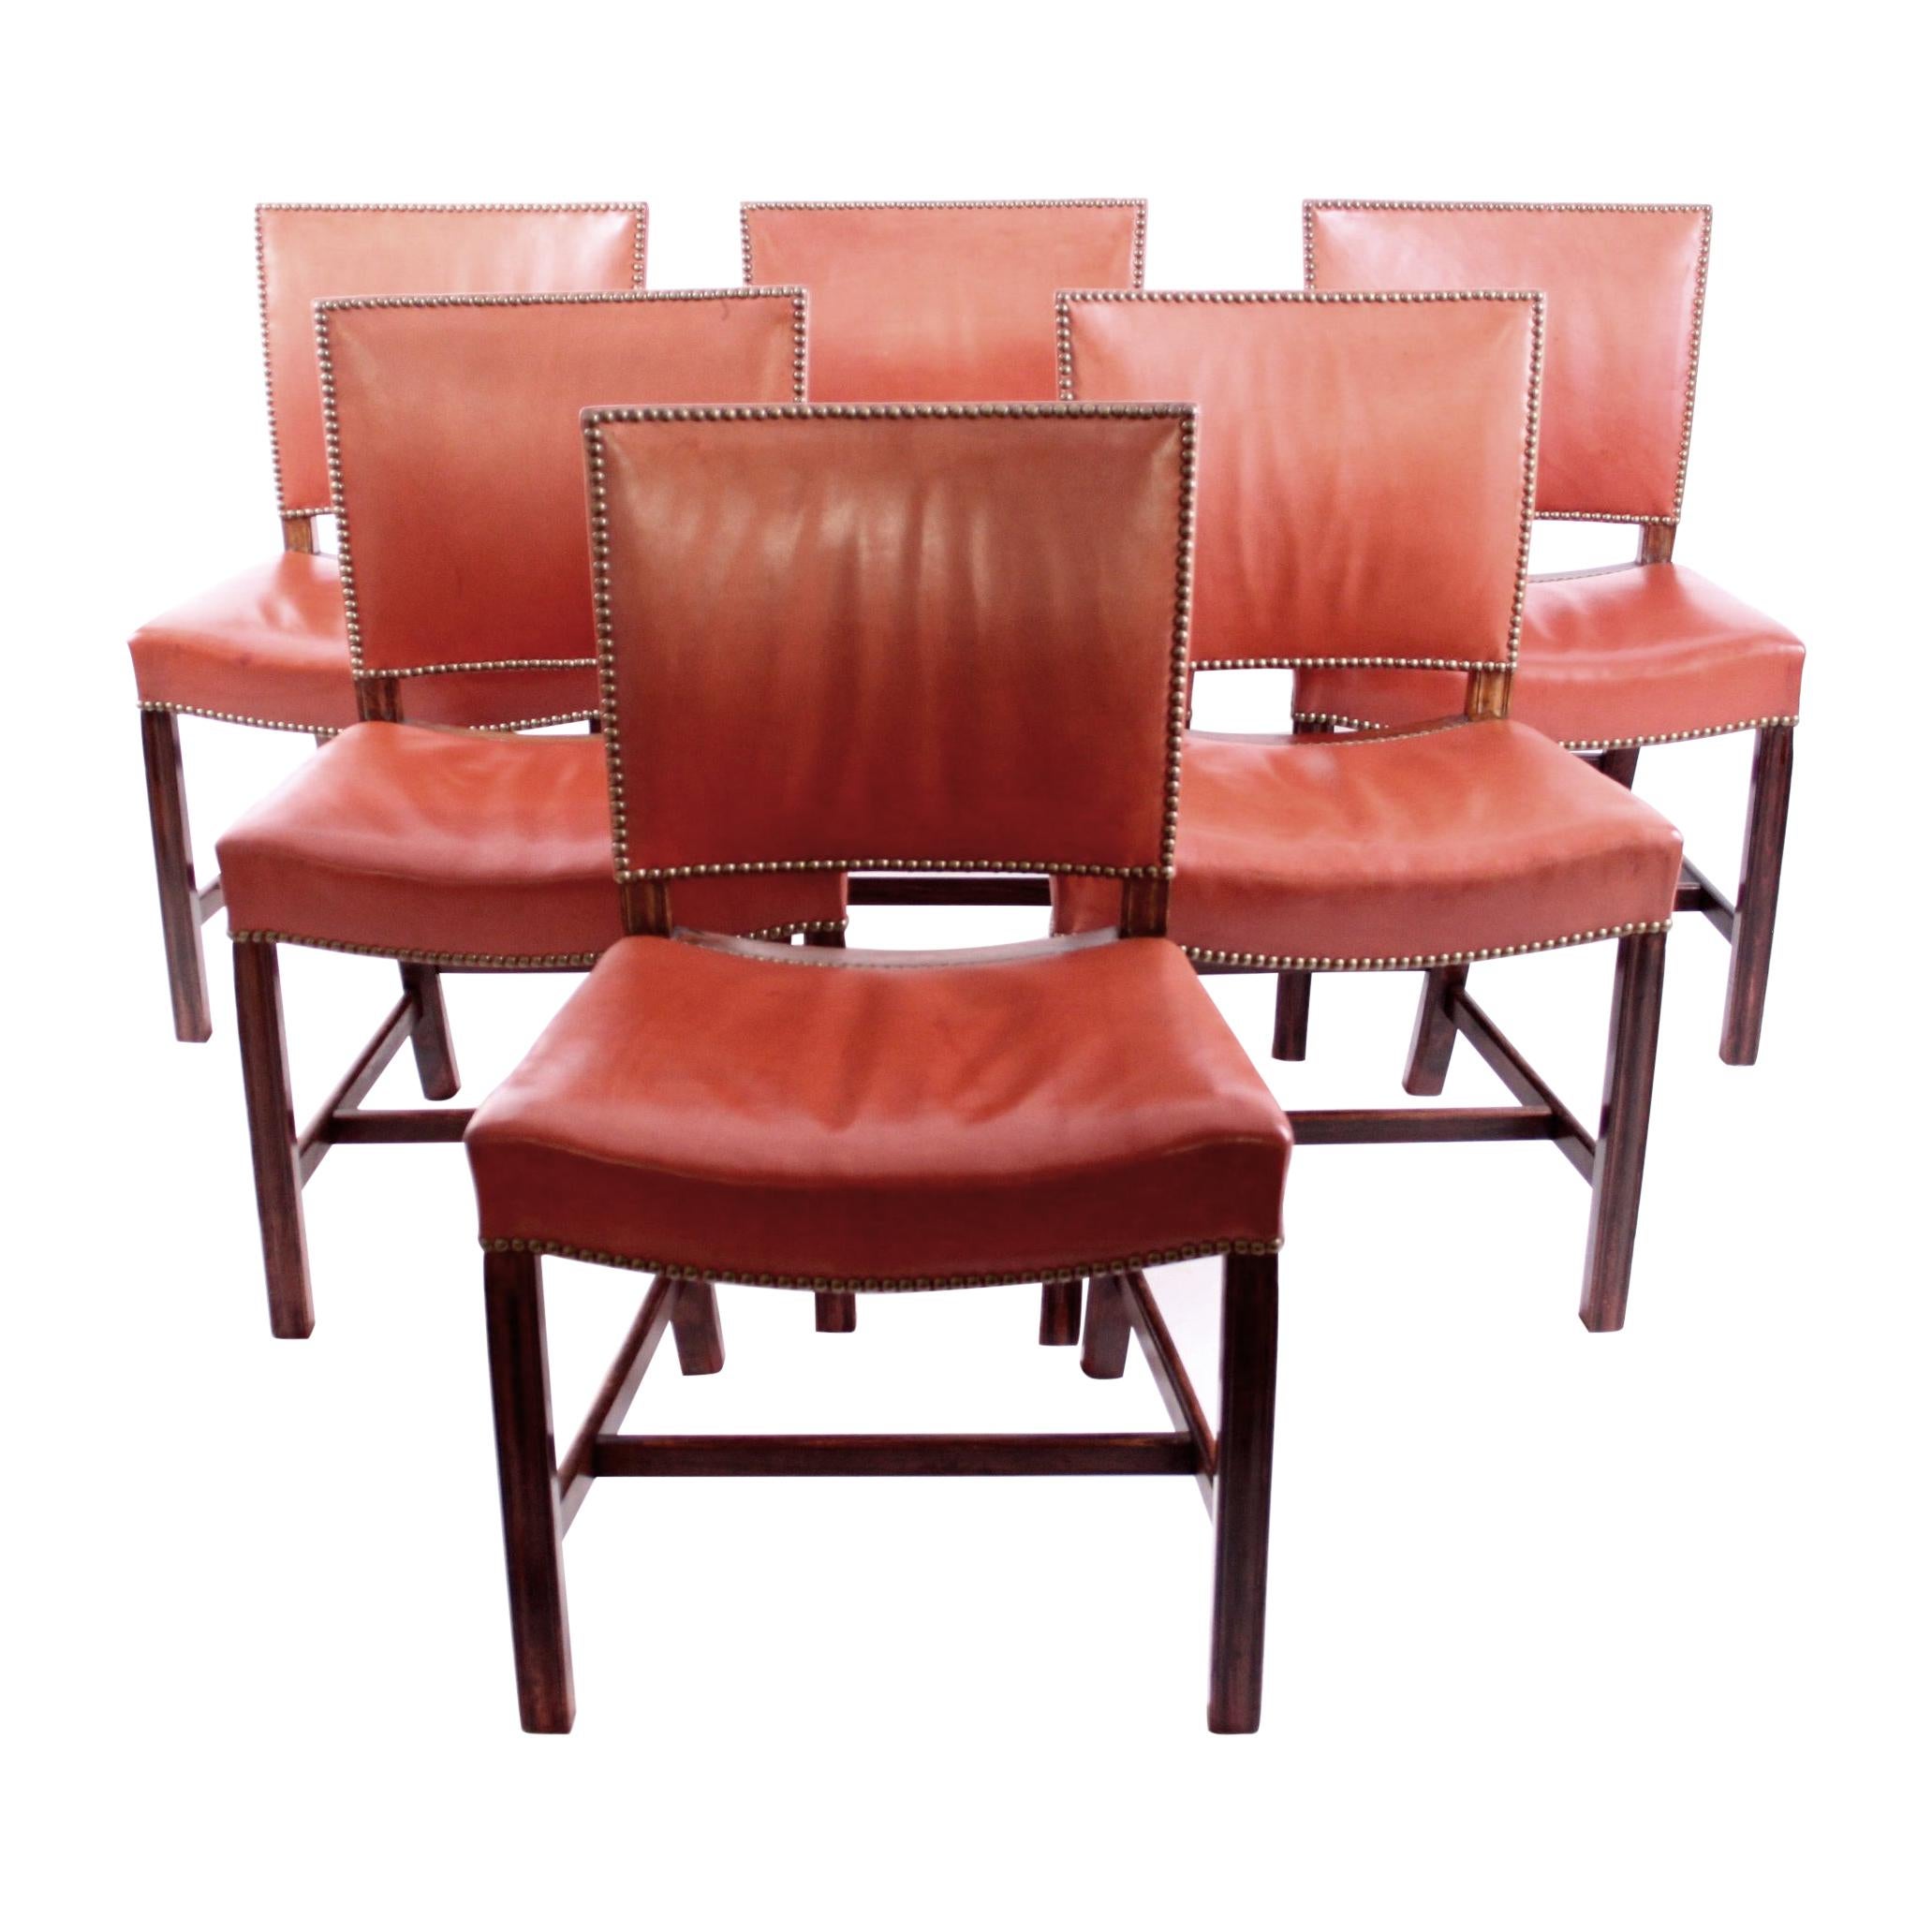 Six Kaare Klint "Red Chairs" by Rud Rasmussen